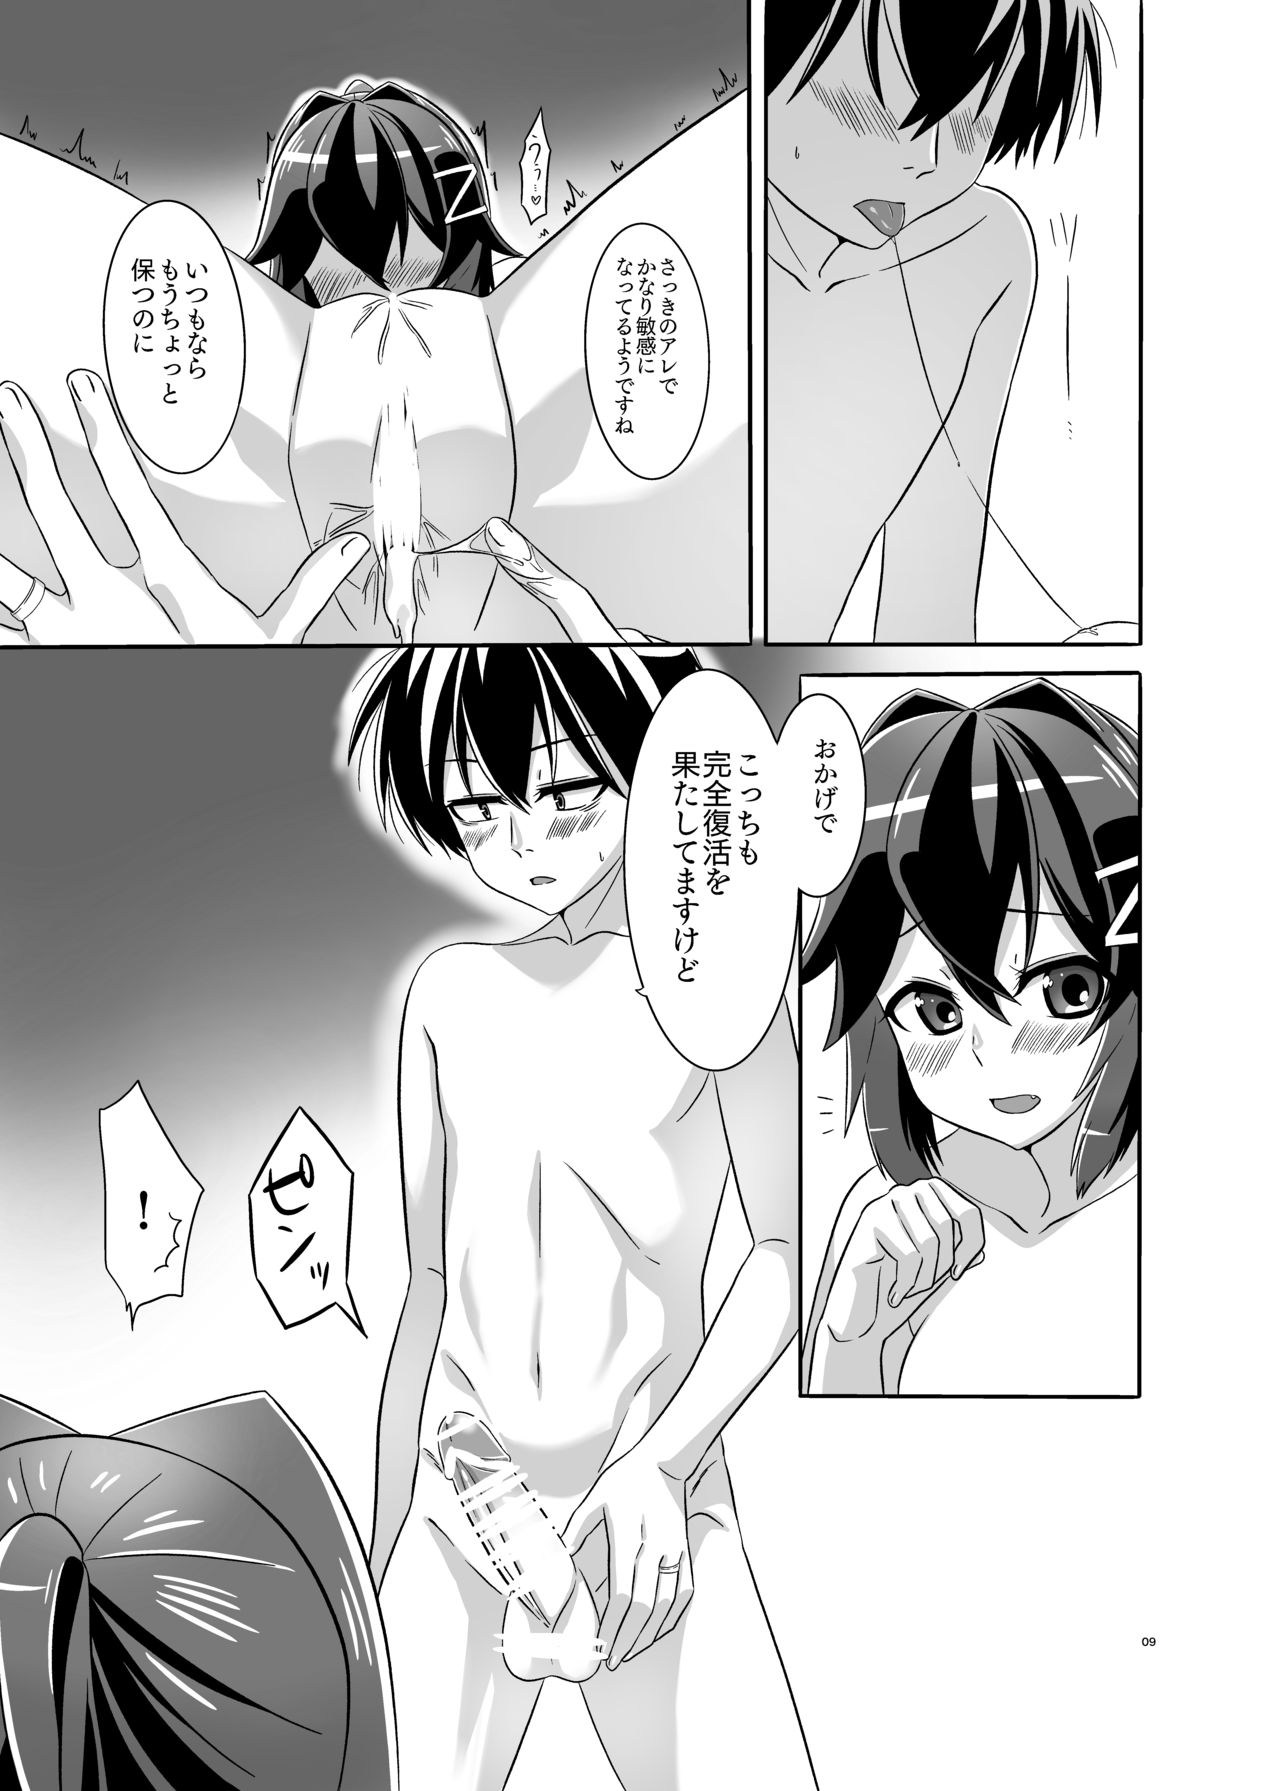 [Torutī-ya] Itsumo no yoru futari no yotogi⑴ (Warship Girls R) page 10 full